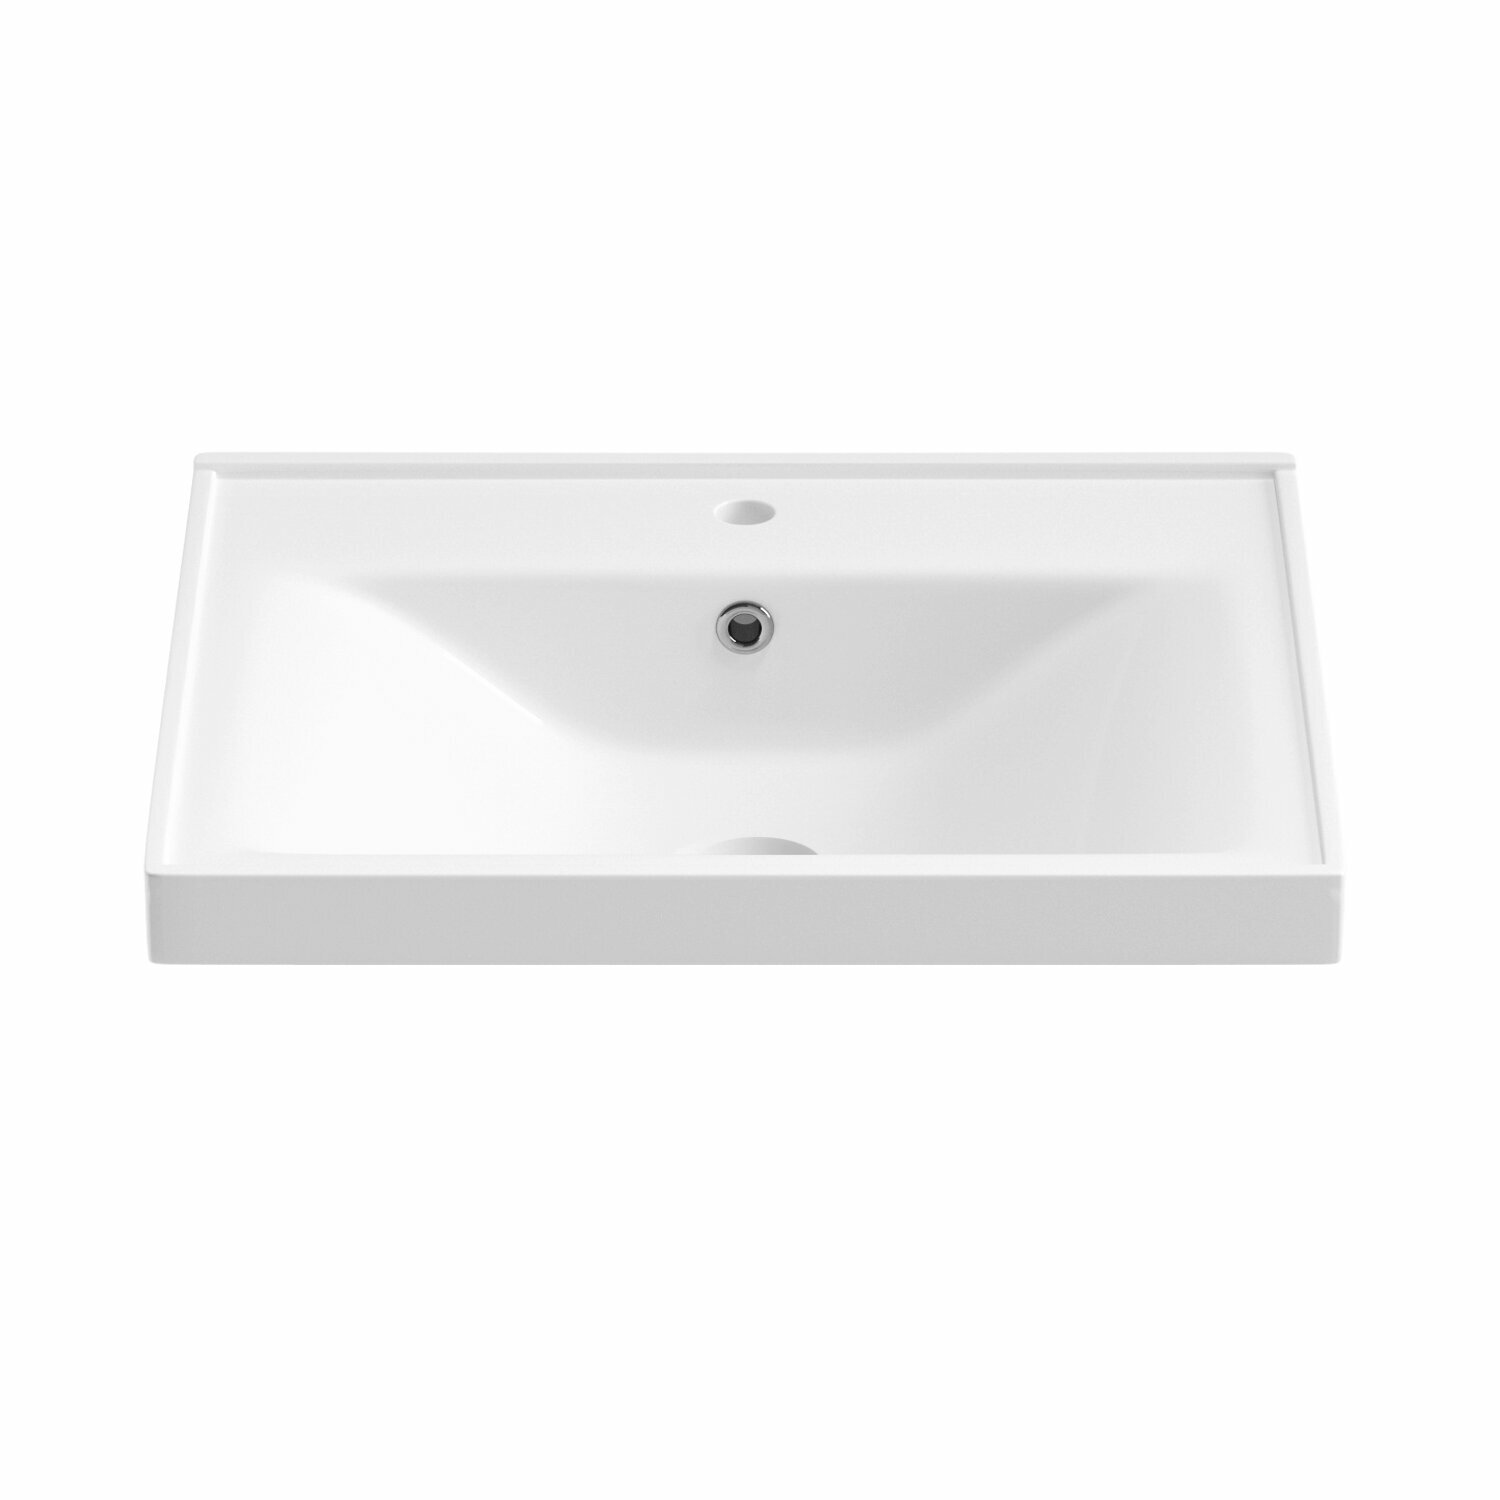 Подвесная/мебельная раковина для ванной комнаты Wellsee FreeDom 151102000, ширина умывальника 55 см, цвет глянцевый белый